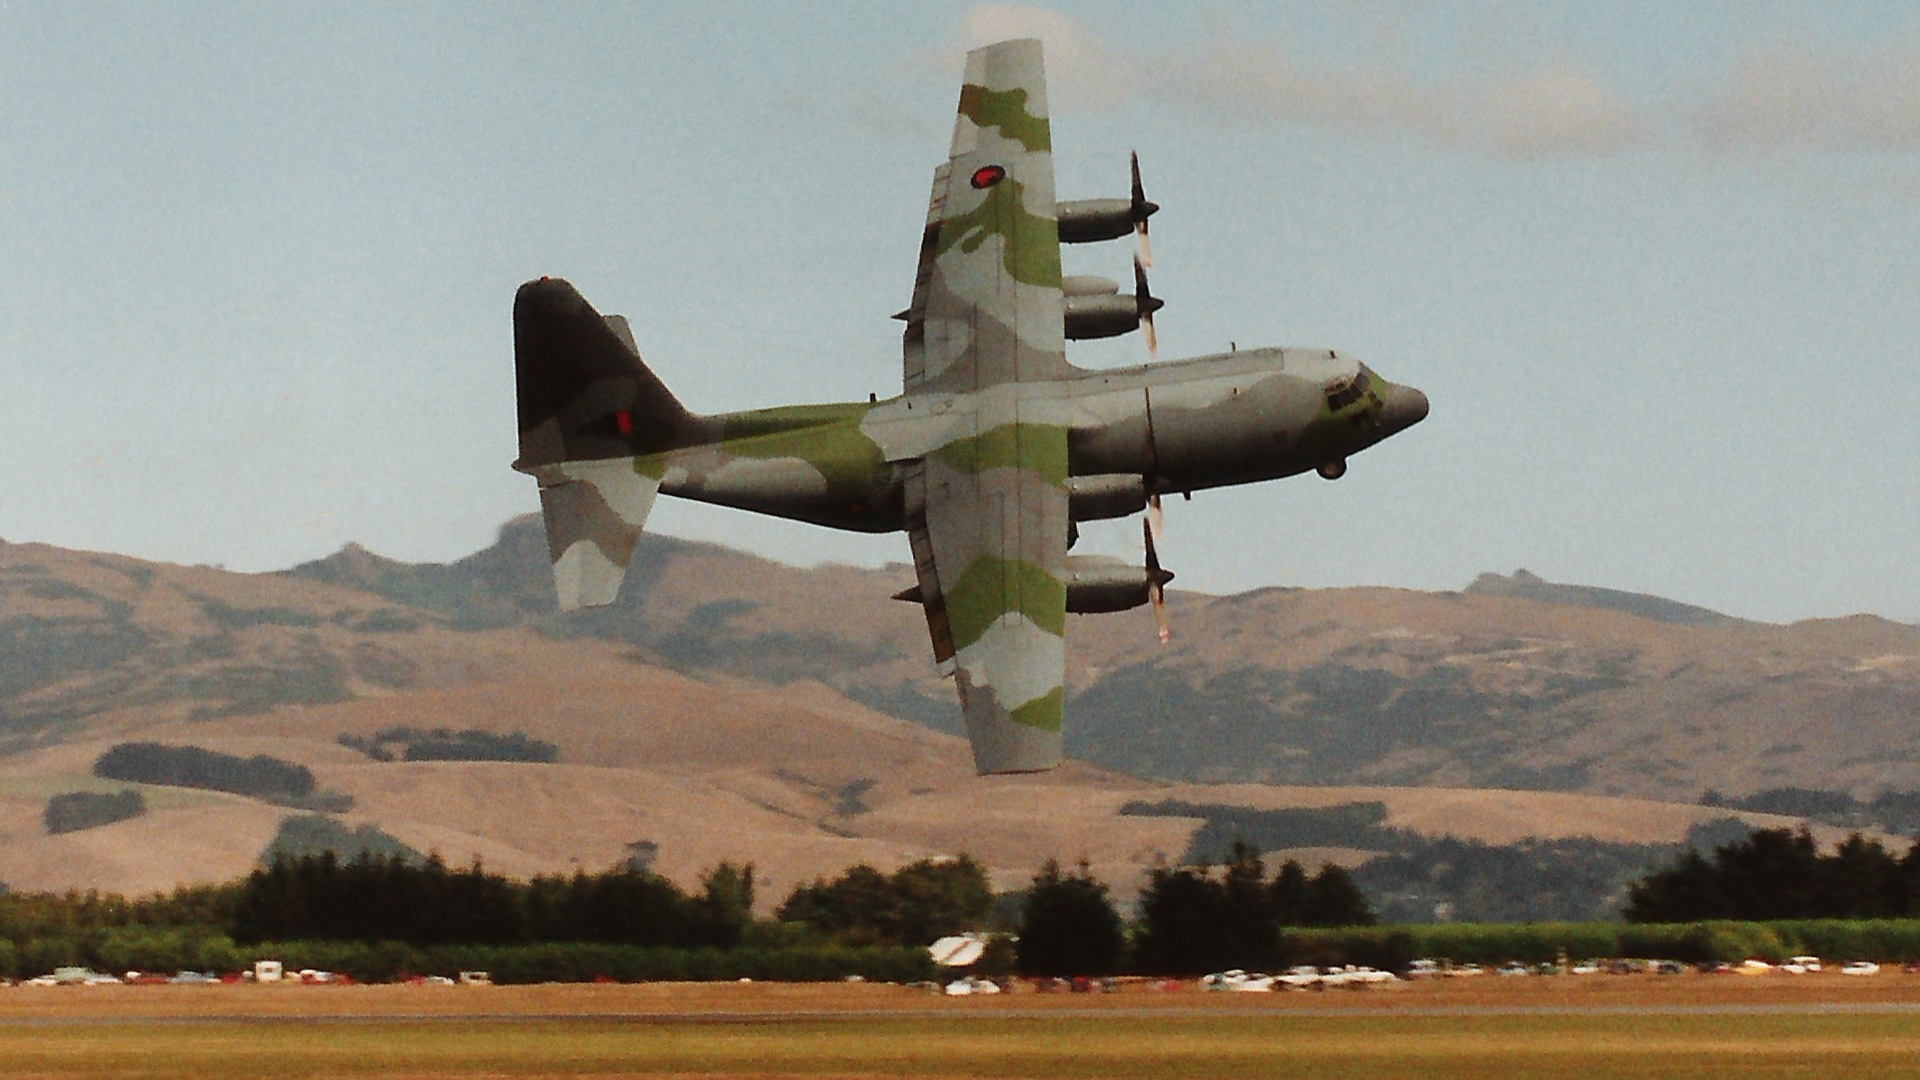 C-130 Hercules - Lockheed C-130 Hercules , HD Wallpaper & Backgrounds